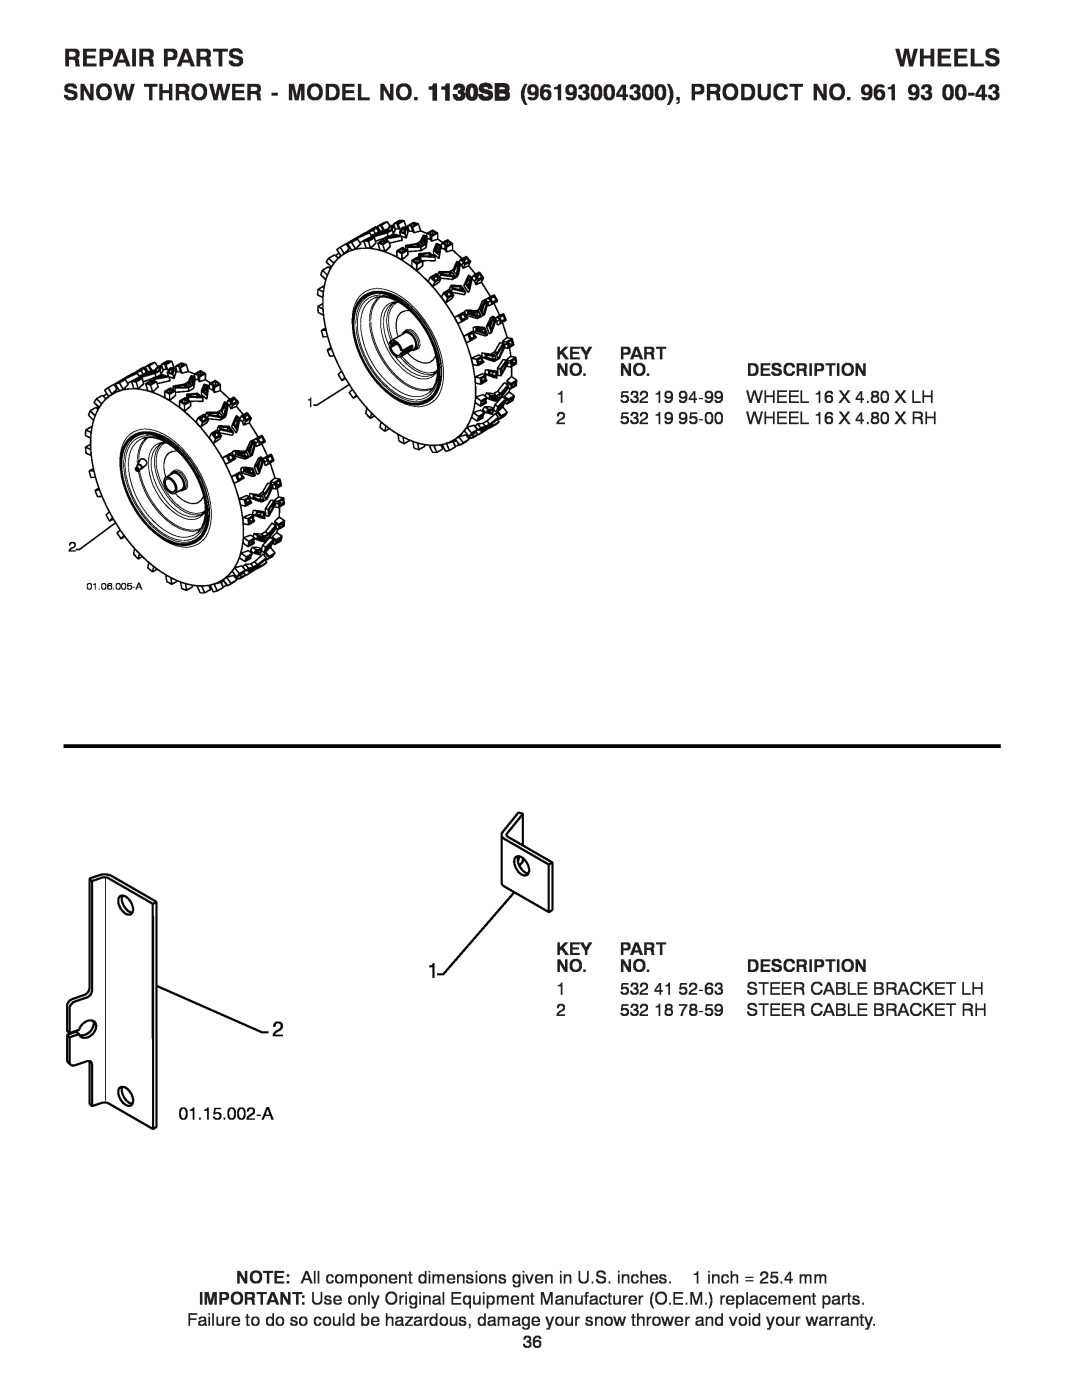 Husqvarna 1130SB owner manual Wheels, Repair Parts, Description, 01.15.002-A 